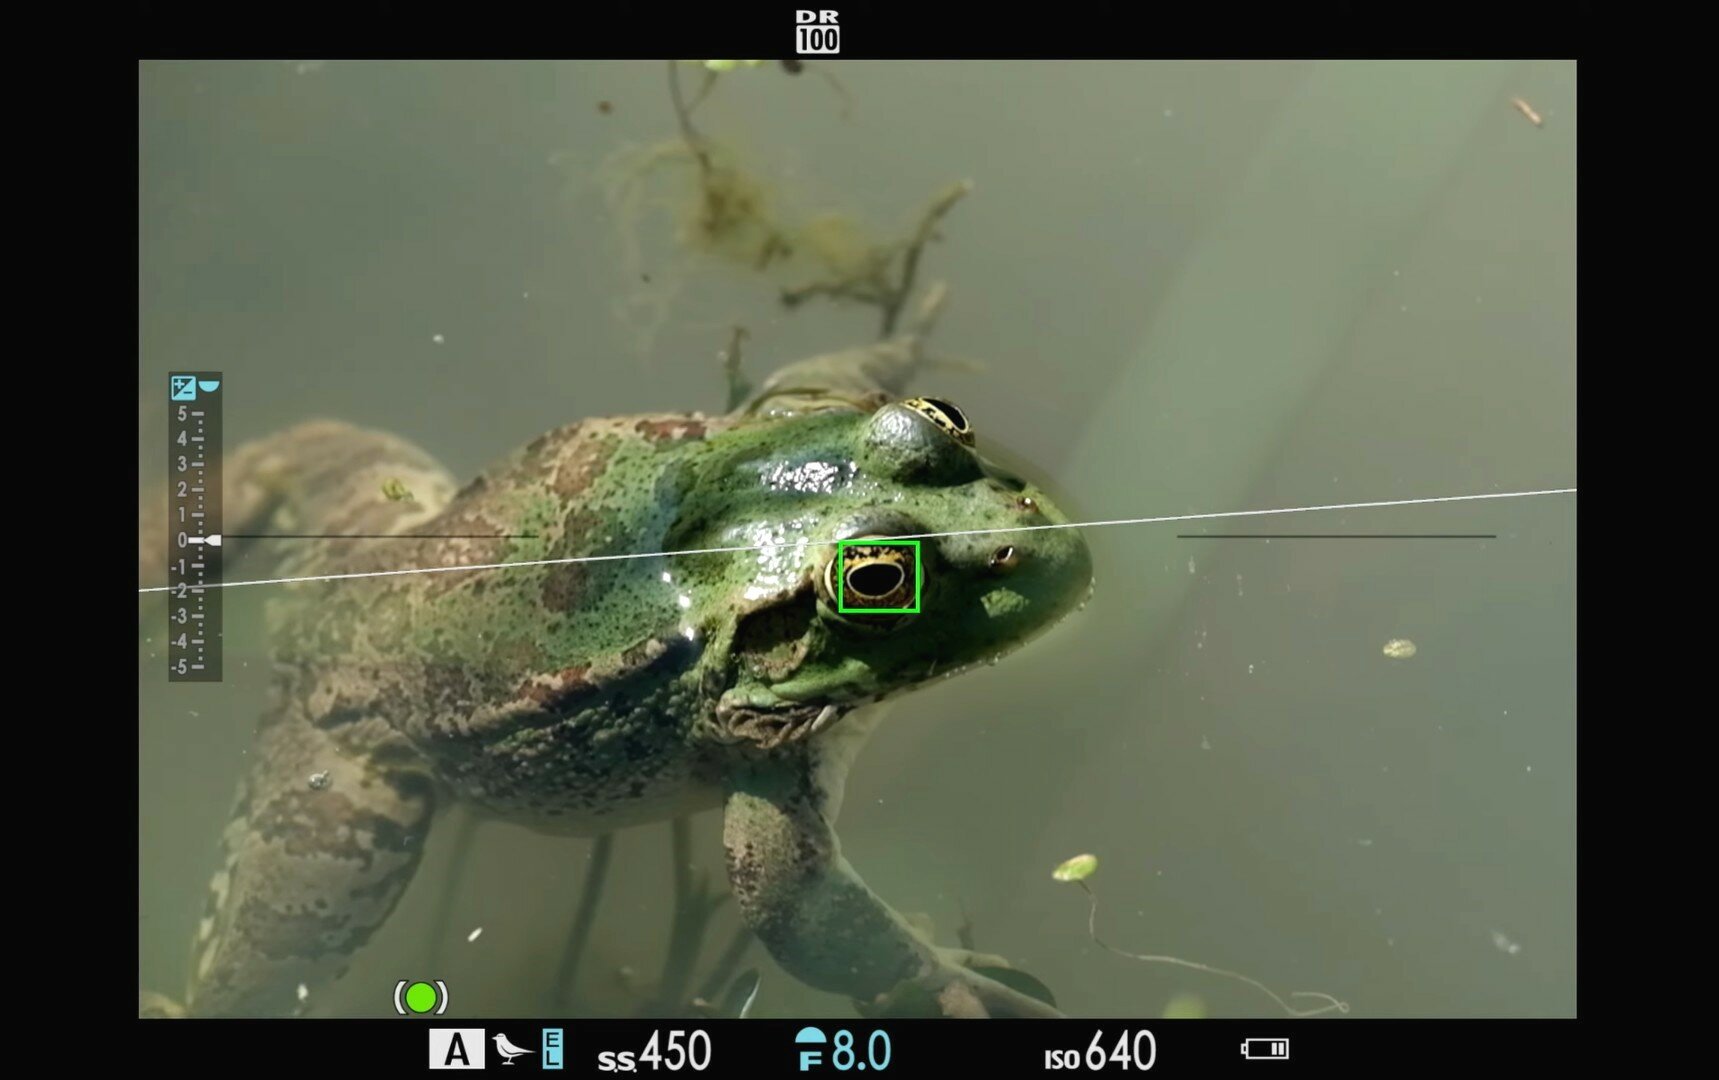 Трекинг птиц универсален: камера Fujifilm случайно научилась распознавать лягушек и бабочек